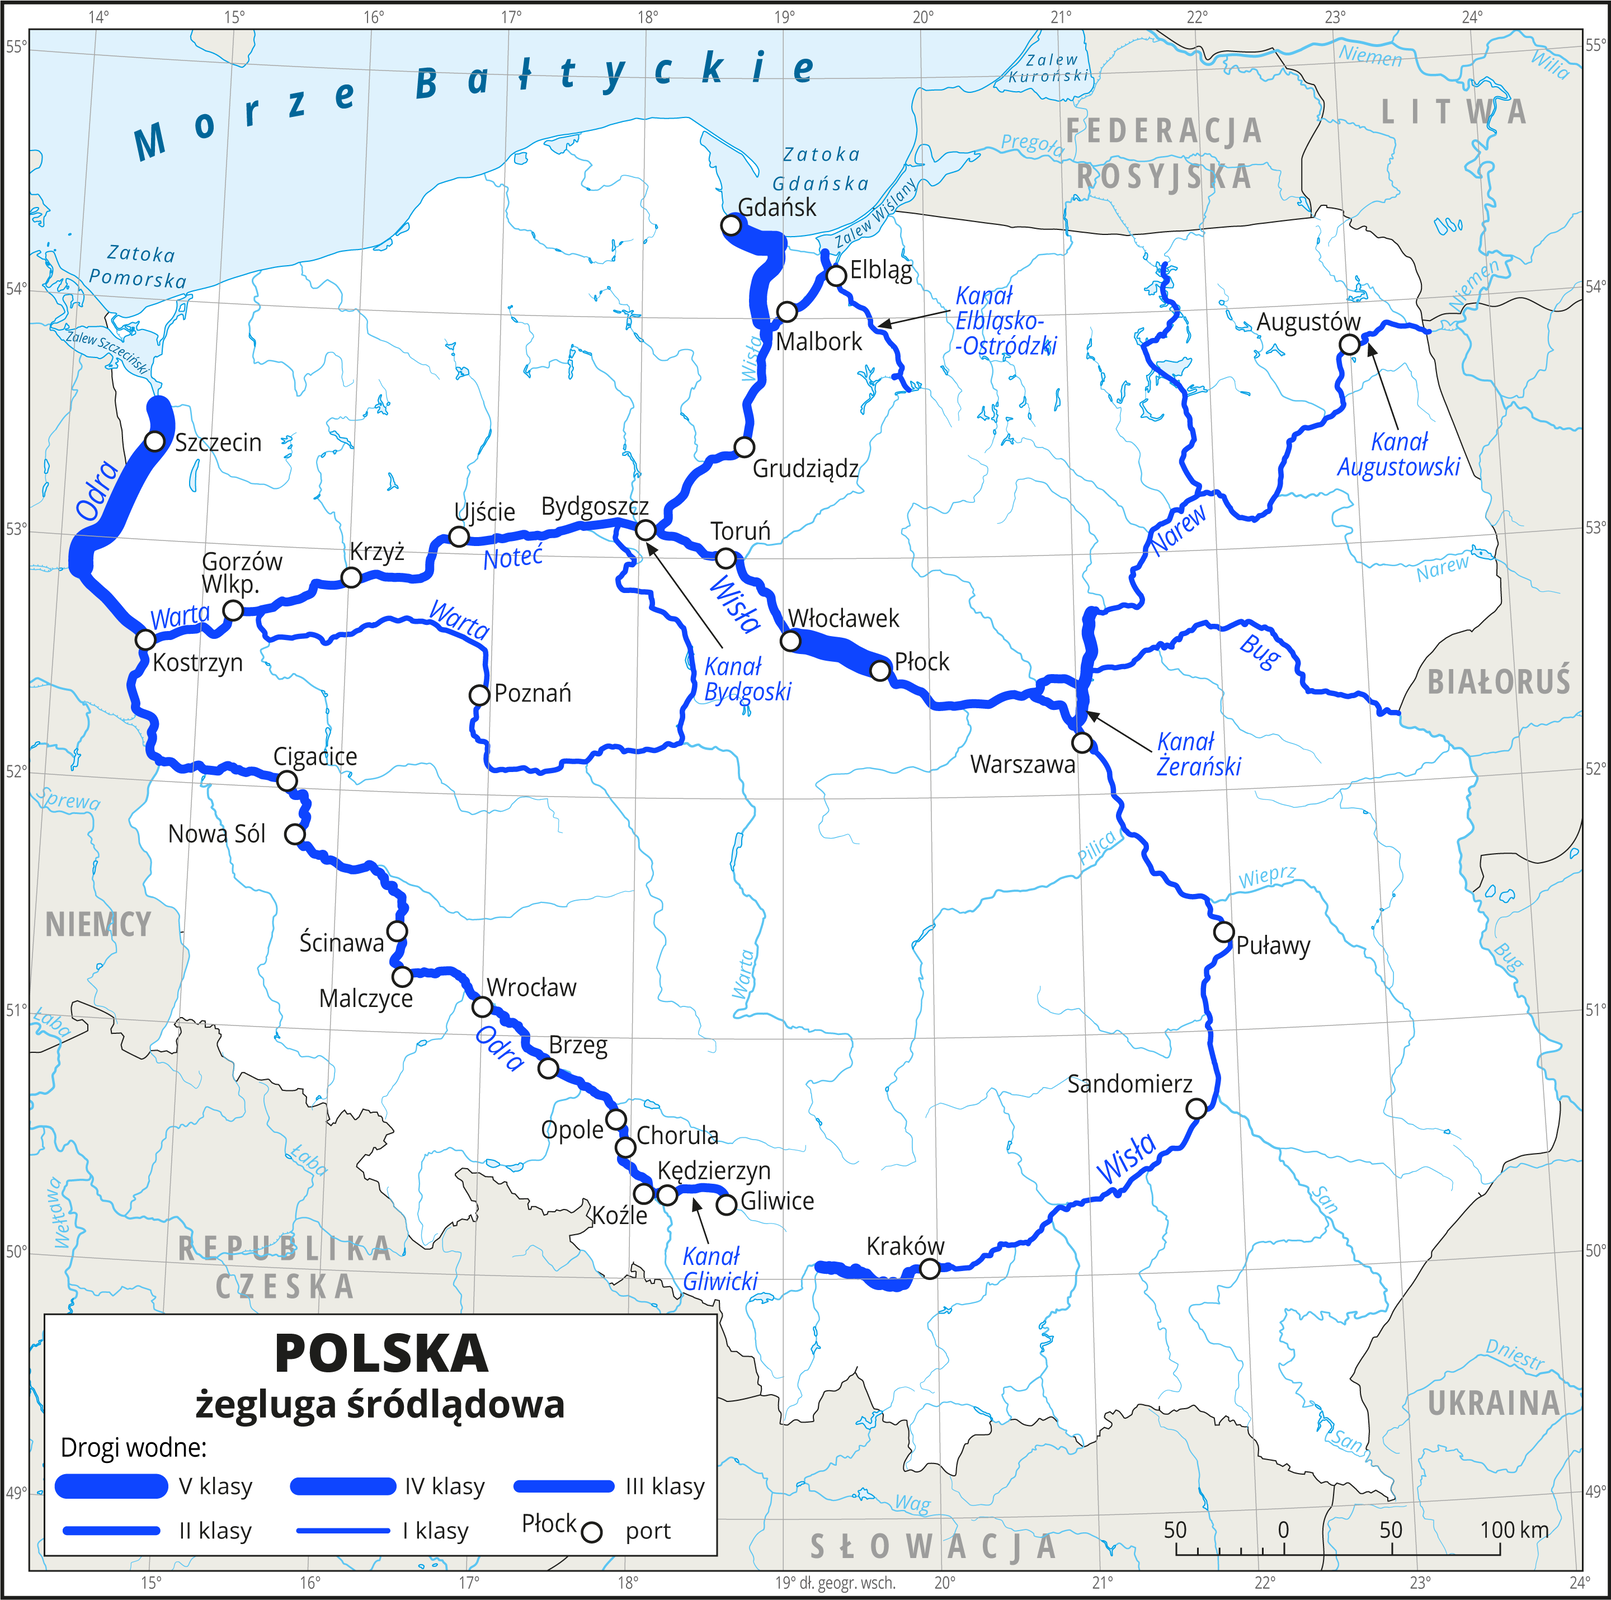 Ilustracja przedstawia mapę Polski. Na mapie niebieskimi liniami przedstawiono drogi wodne z podziałem na klasy (szerokie – klasa czwarta i piąta, wąskie – klasy jeden, dwa, trzy). Białymi kółkami zaznaczono miasta portowe. Strzałkami wskazano kanały i opisano ich nazwy. Drogi wodne przebiegają głównymi rzekami, zasadniczo najszersze są u ujść. Mapa pokryta jest równoleżnikami i południkami. Dookoła mapy w białej ramce opisano współrzędne geograficzne co jeden stopień.